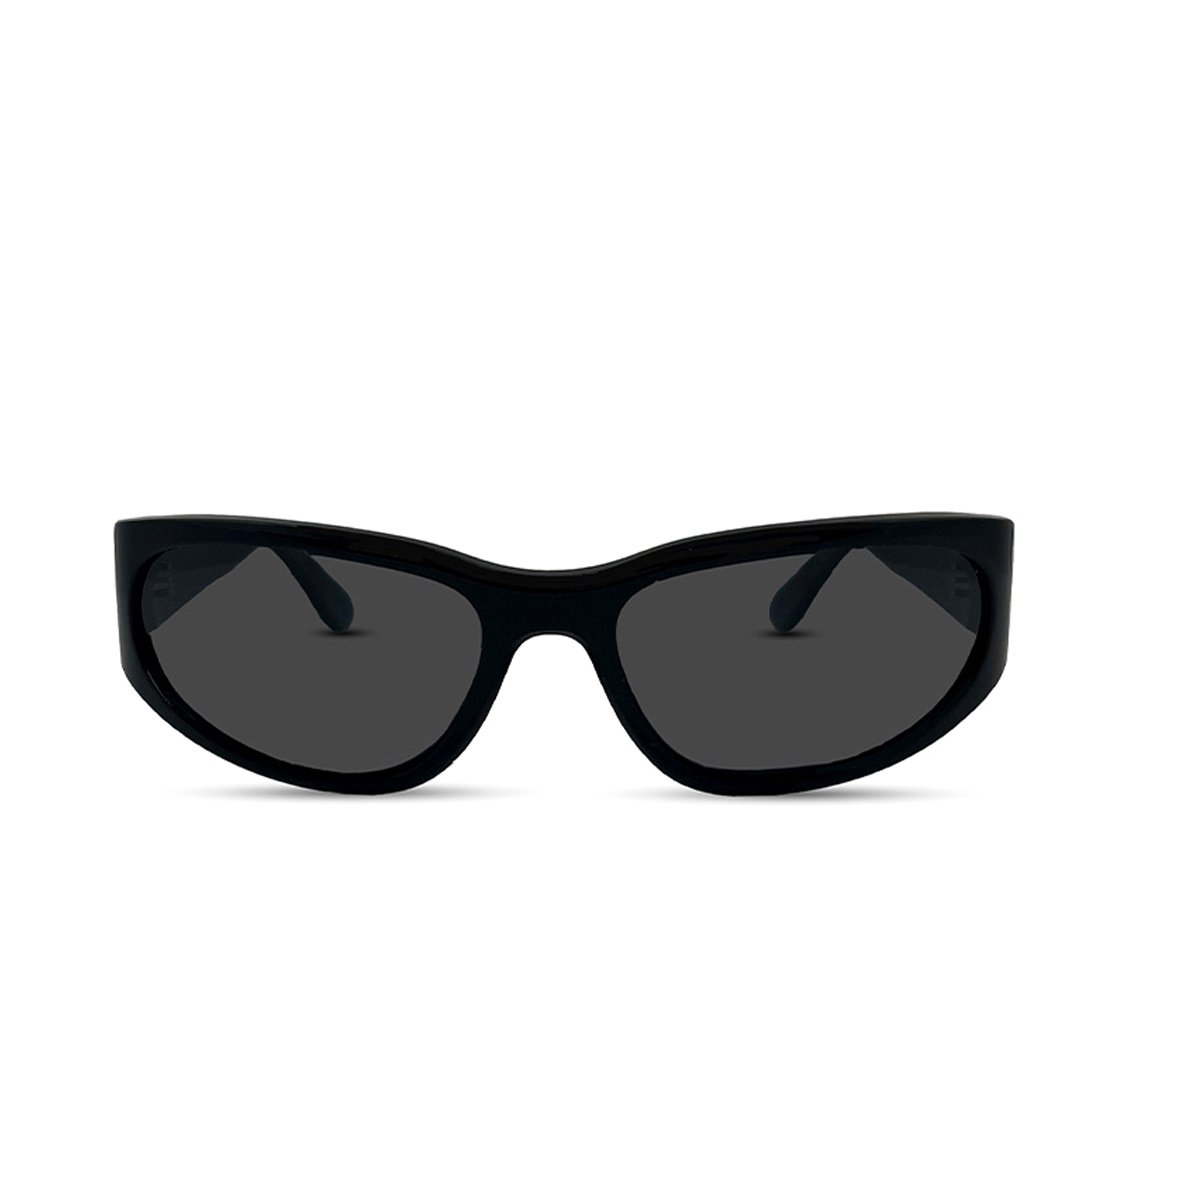 PB Sunglasses - Athletic Black. - Zonnebril heren en dames - Gepolariseerd - Zwart design - Stevig 100% acetaat frame